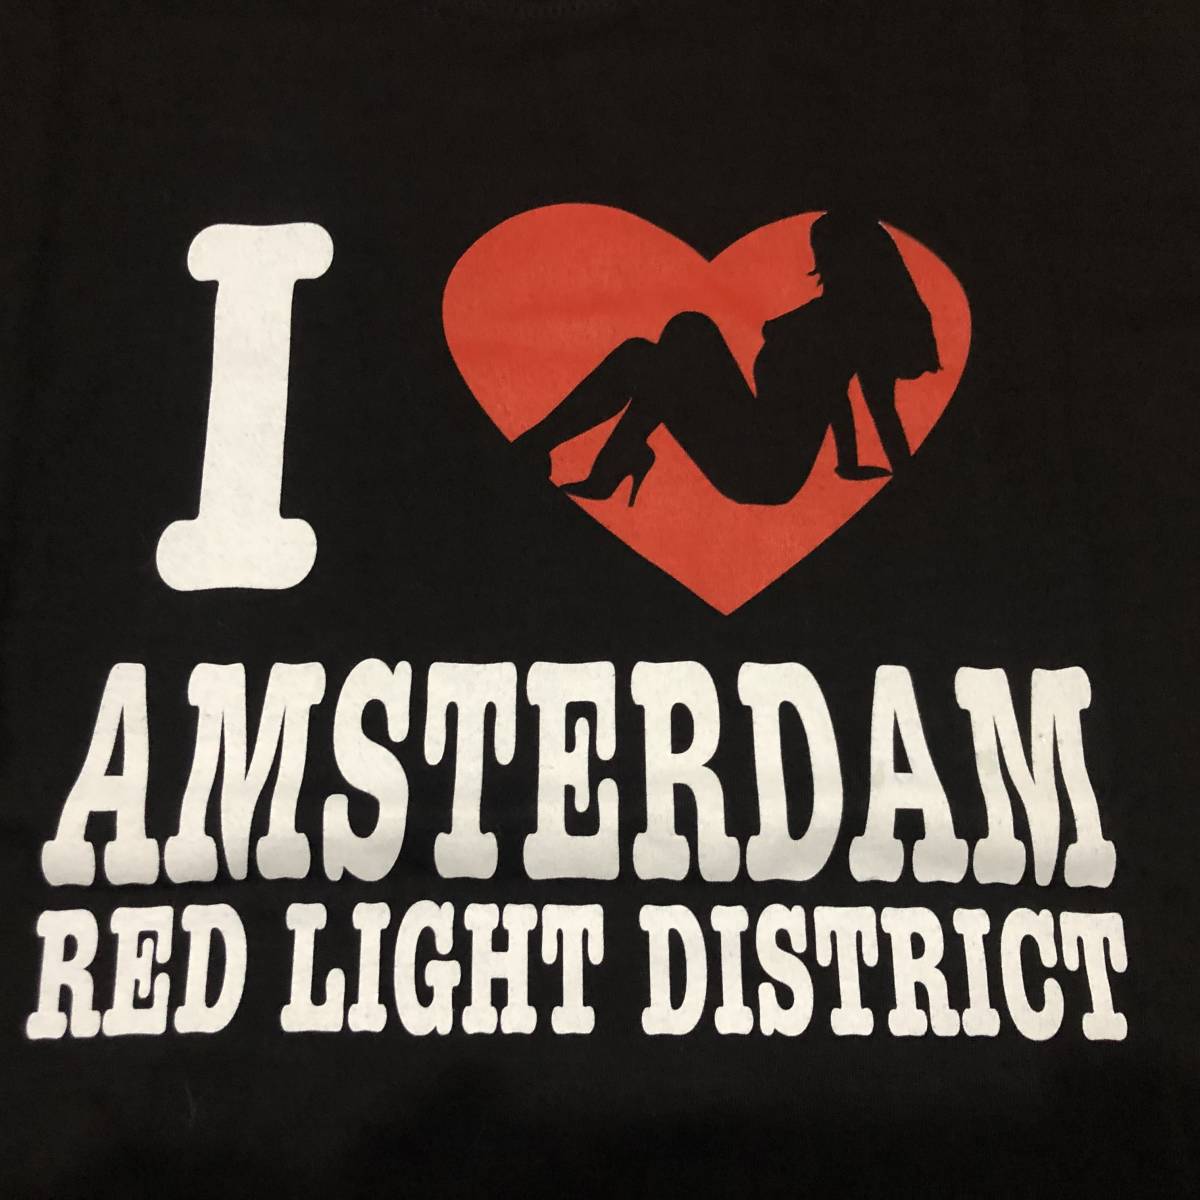  новый товар  *    блиц-цена  *   бандероль Click Post   отправка  *  ... ... купил ’I LOVE AMSTERDAM RED LIGHT DISTRICT’   ' украшение  ...' сюжет     Ｔ рубашка   *   черный  *  S